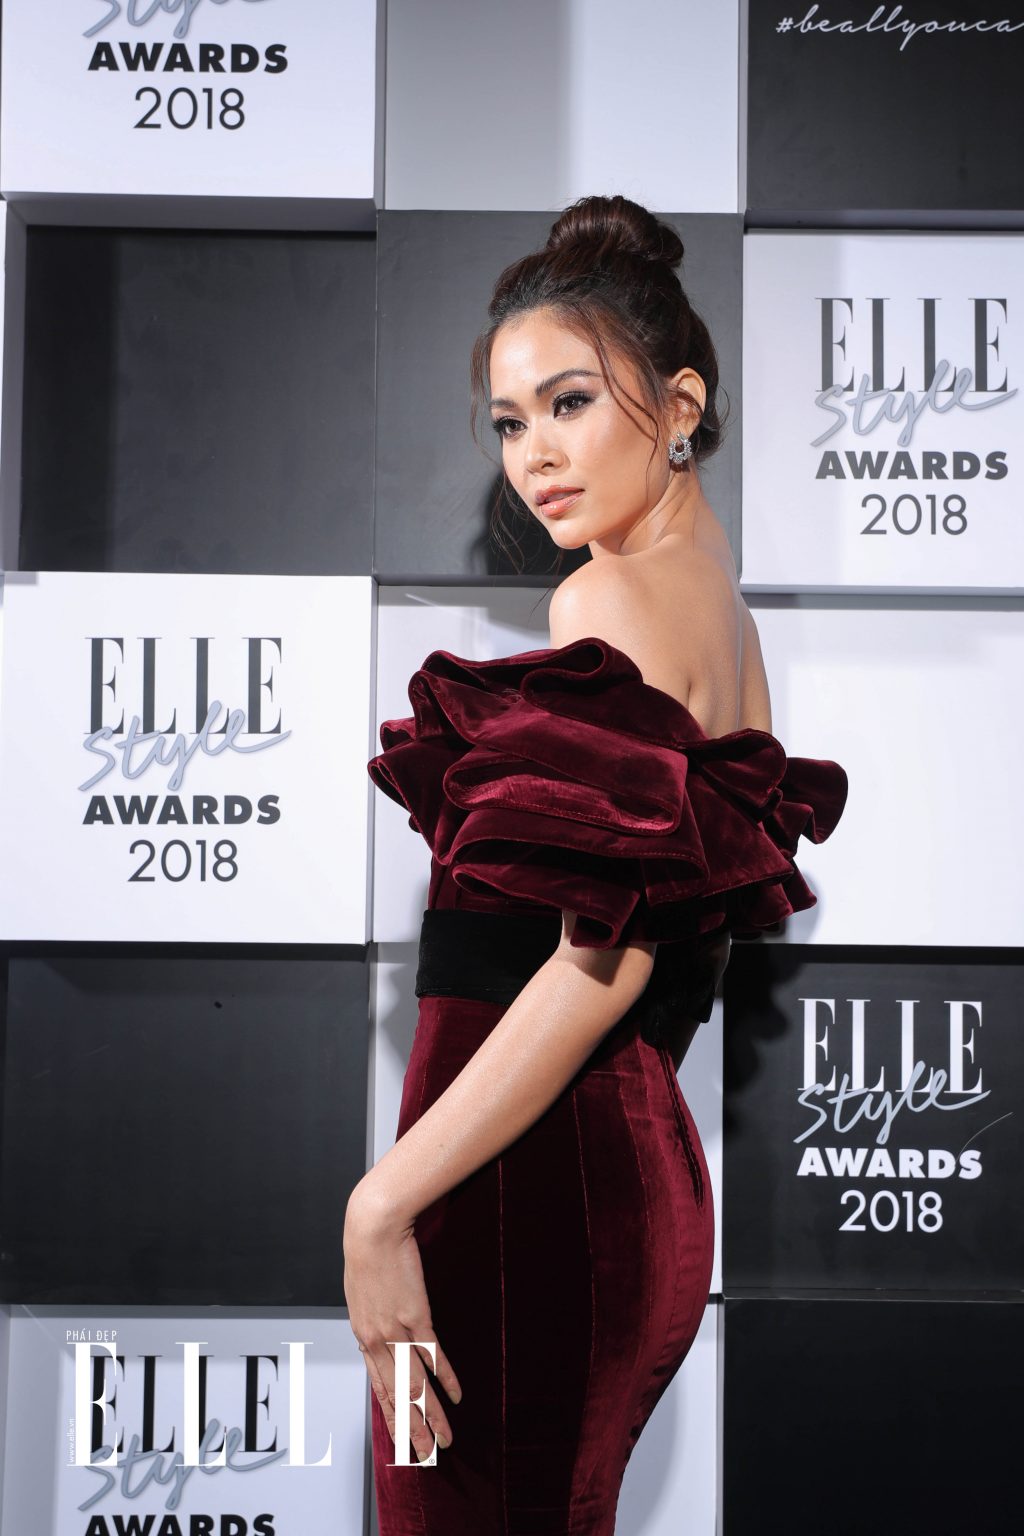 ELLE Style Awards 2018 Mau Thuy